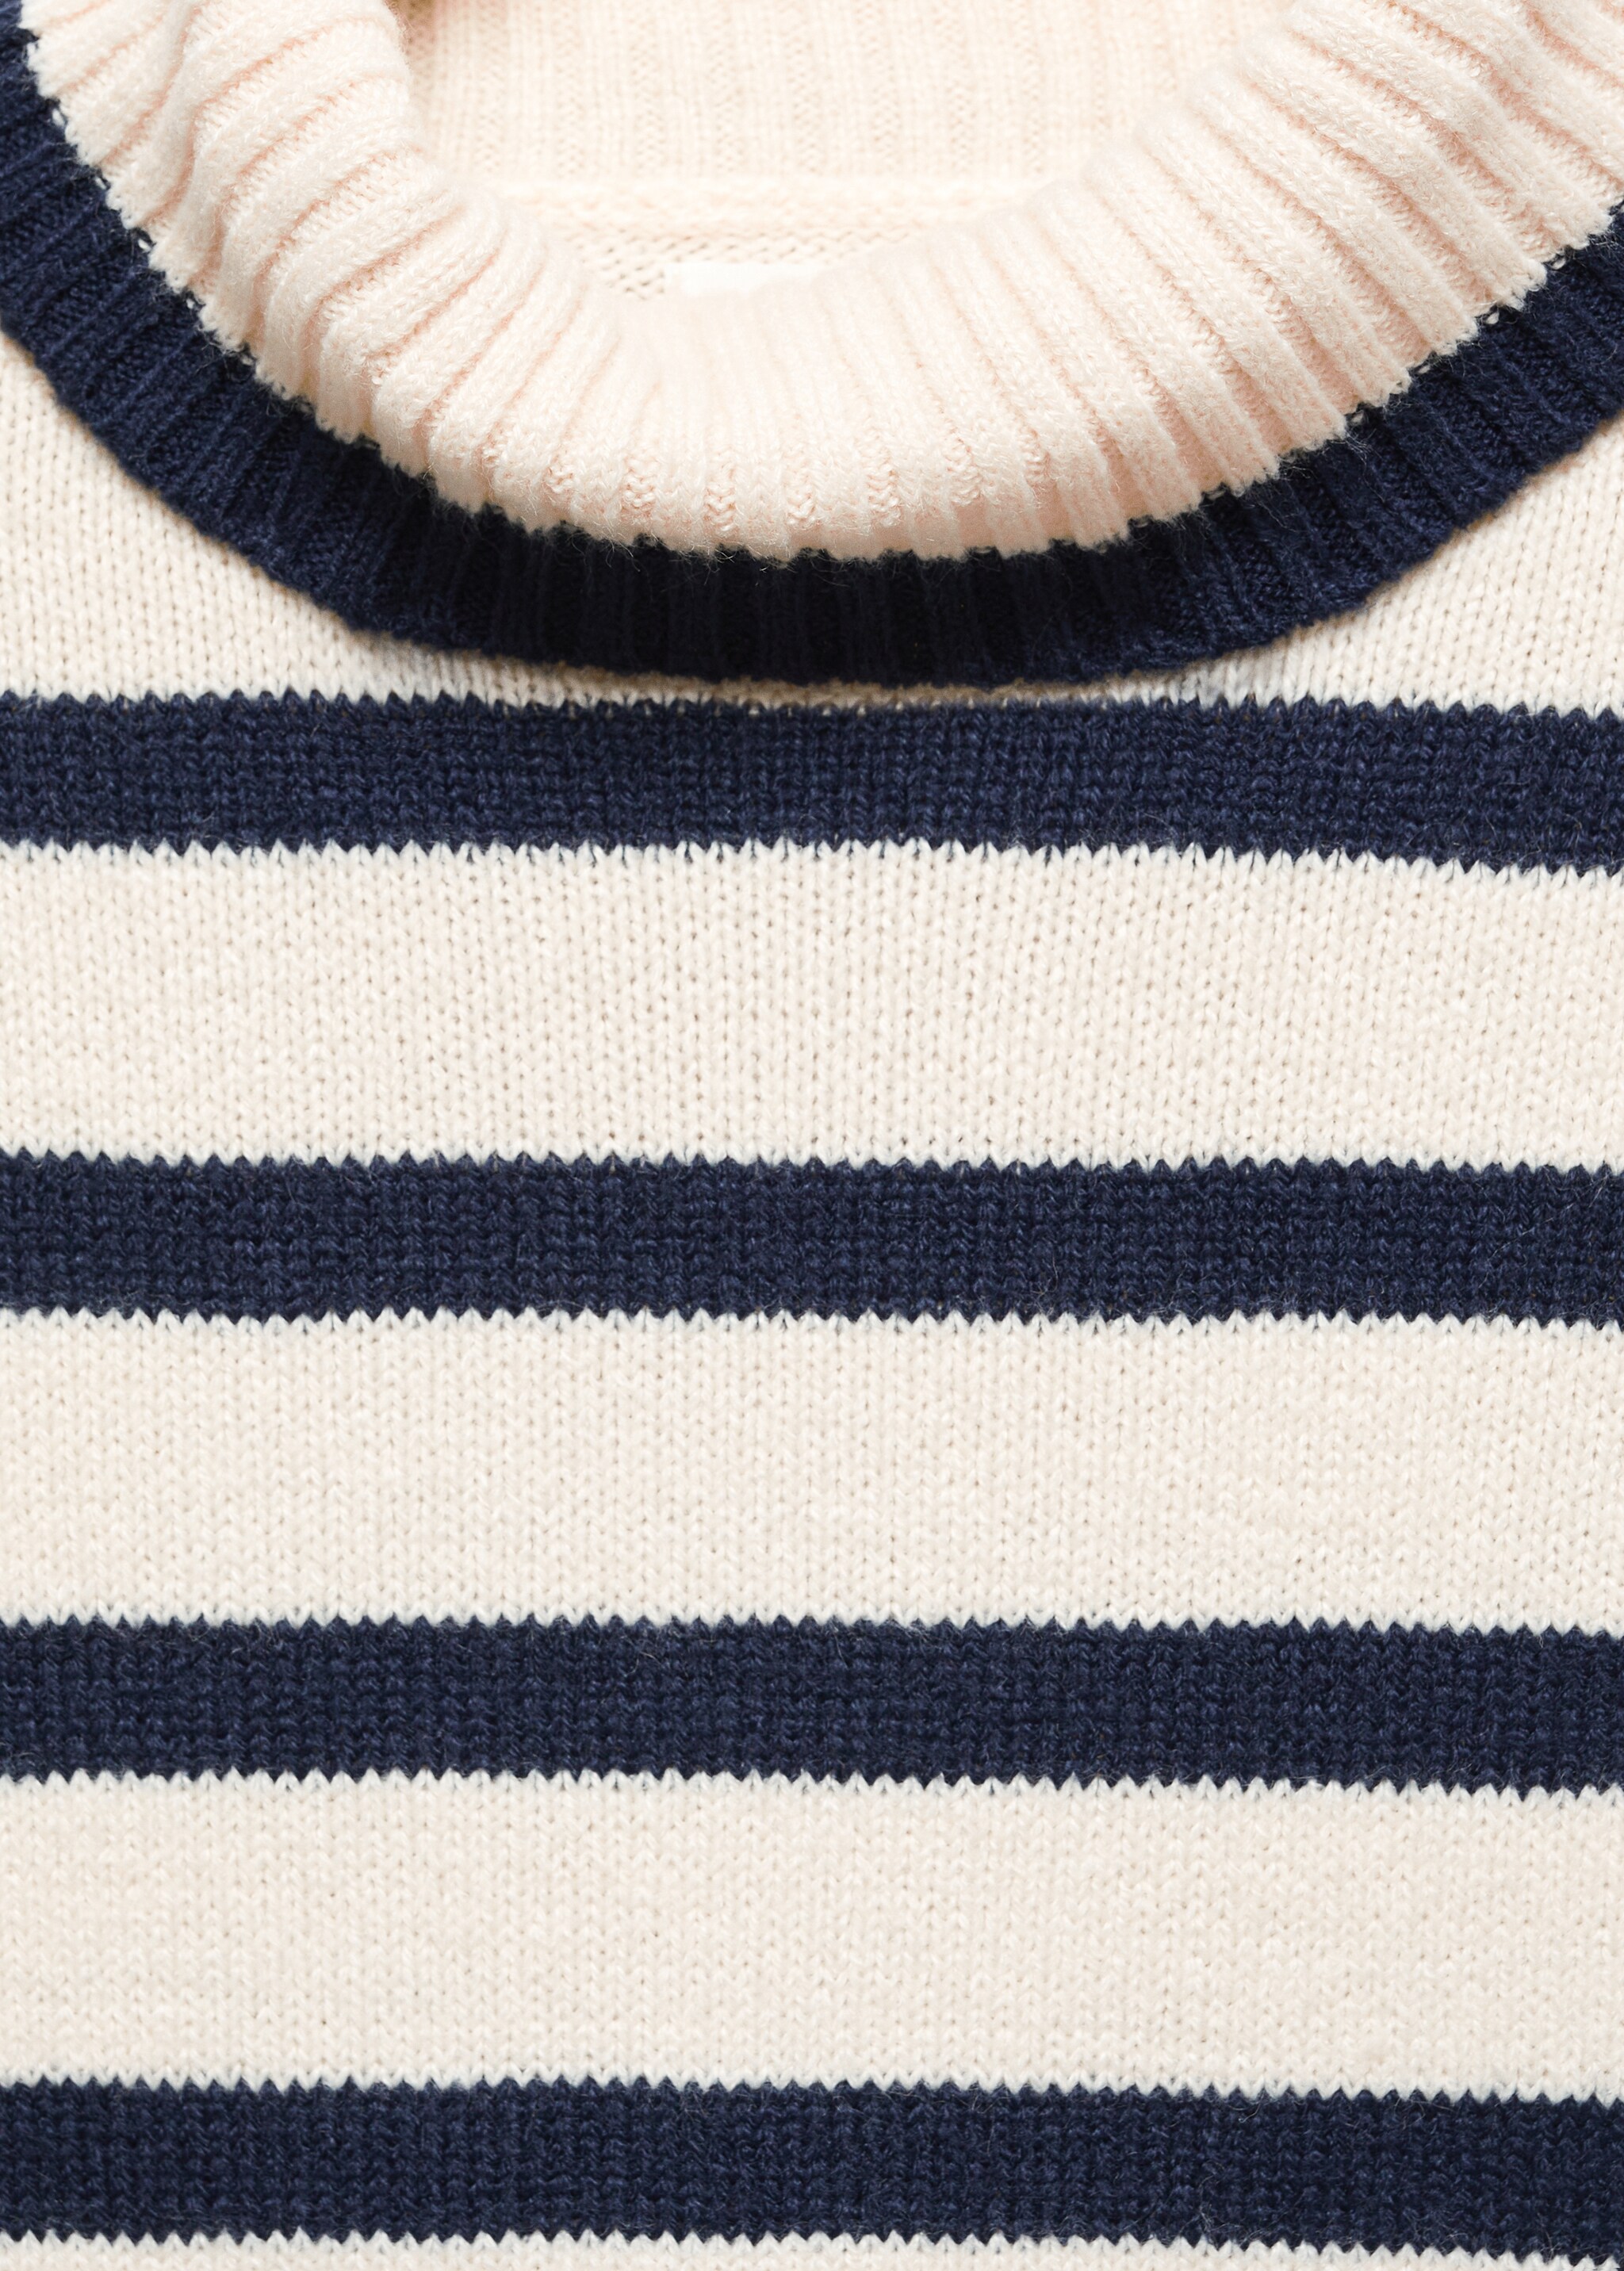 Stand-collar striped sweater - Detail van het artikel 8